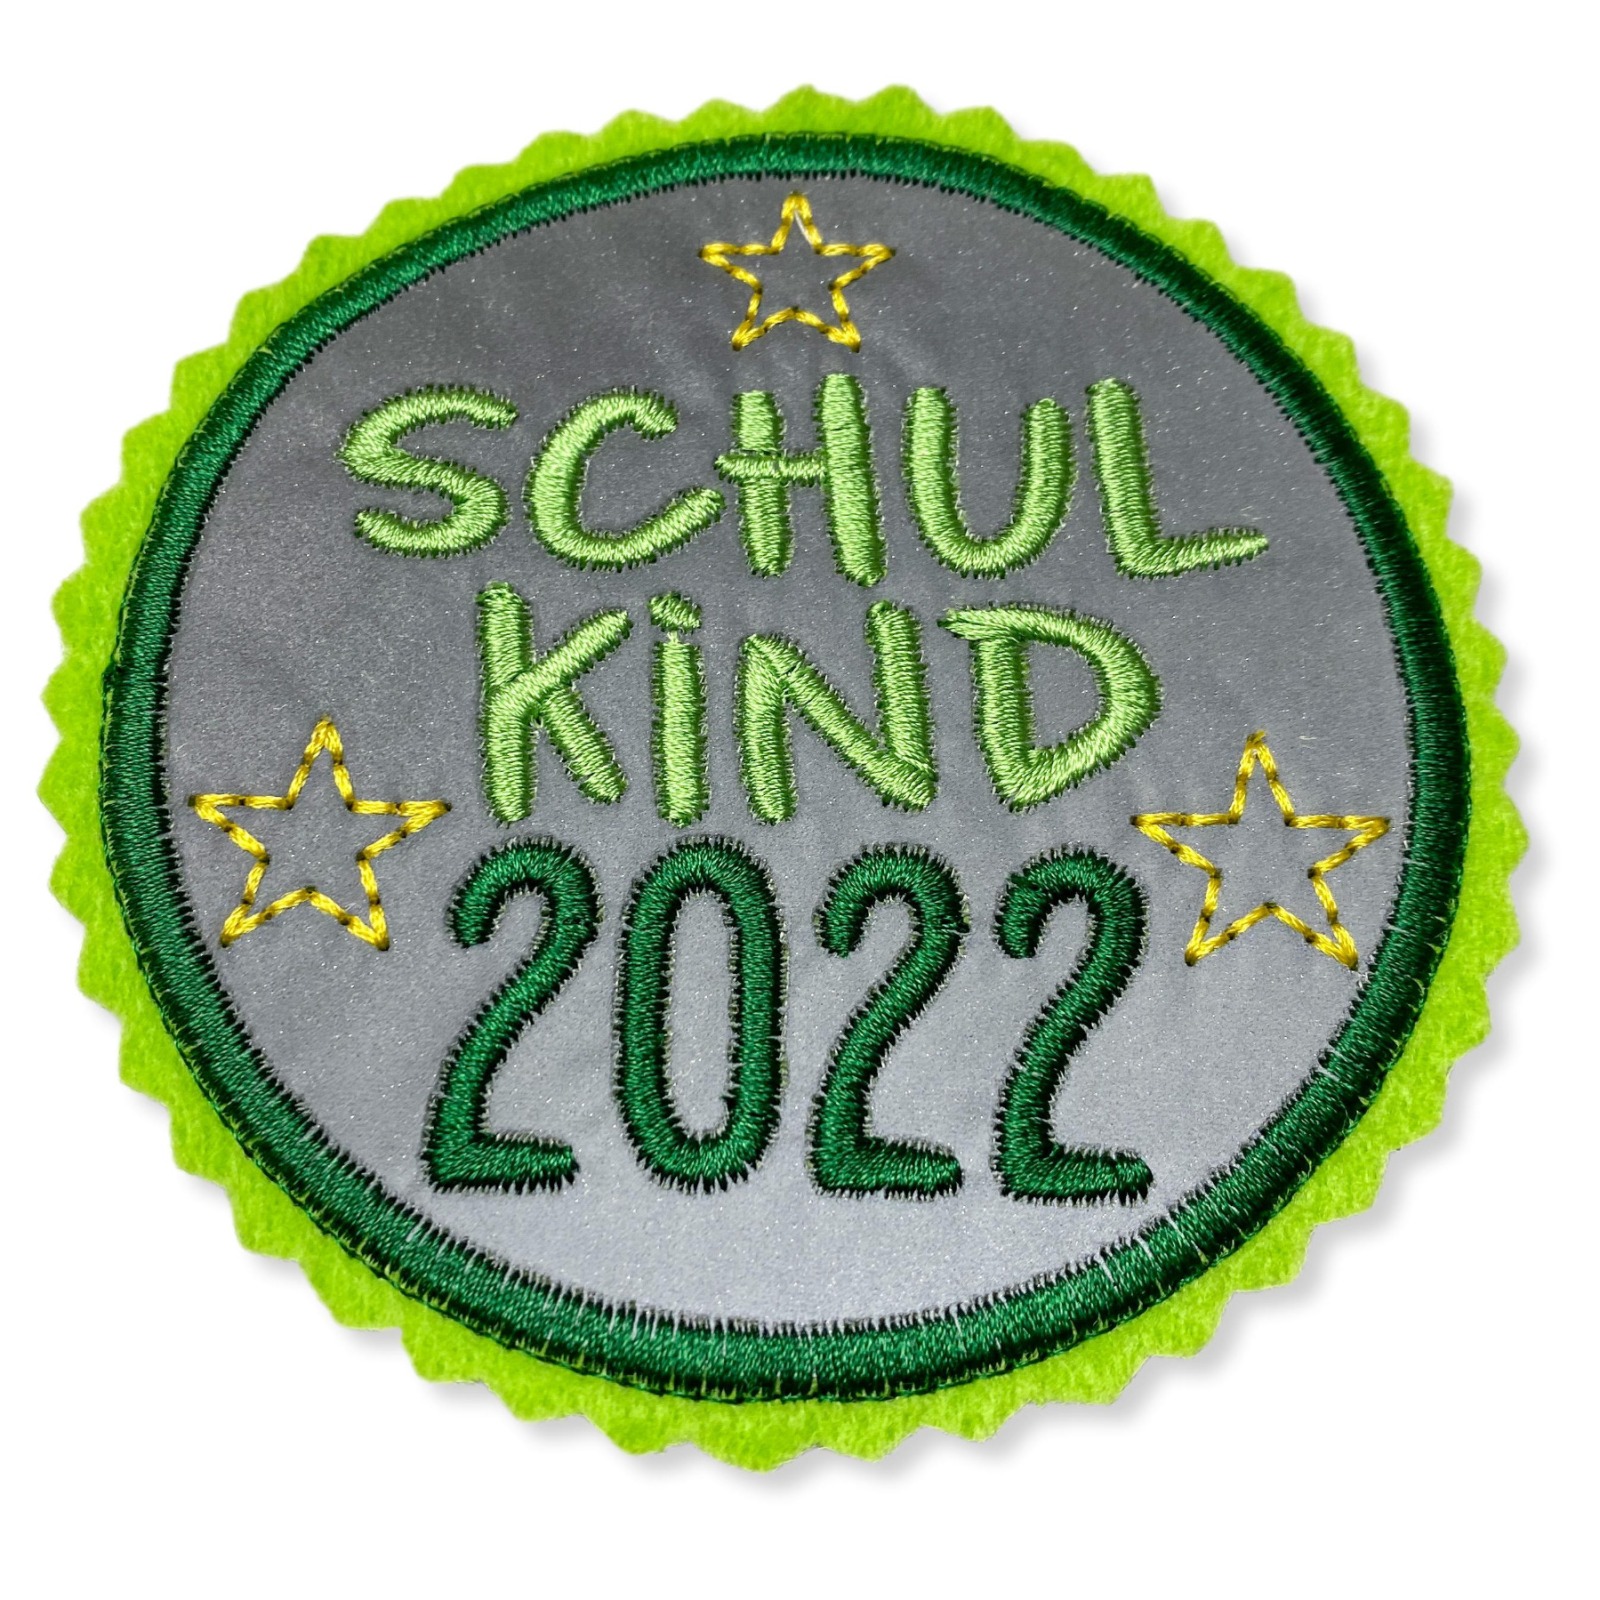 Kletti Schulkind 2022 10cm Durchmesser Reflektorstoff hellgrün dunkelgrün Einschulung Schulmappe 4